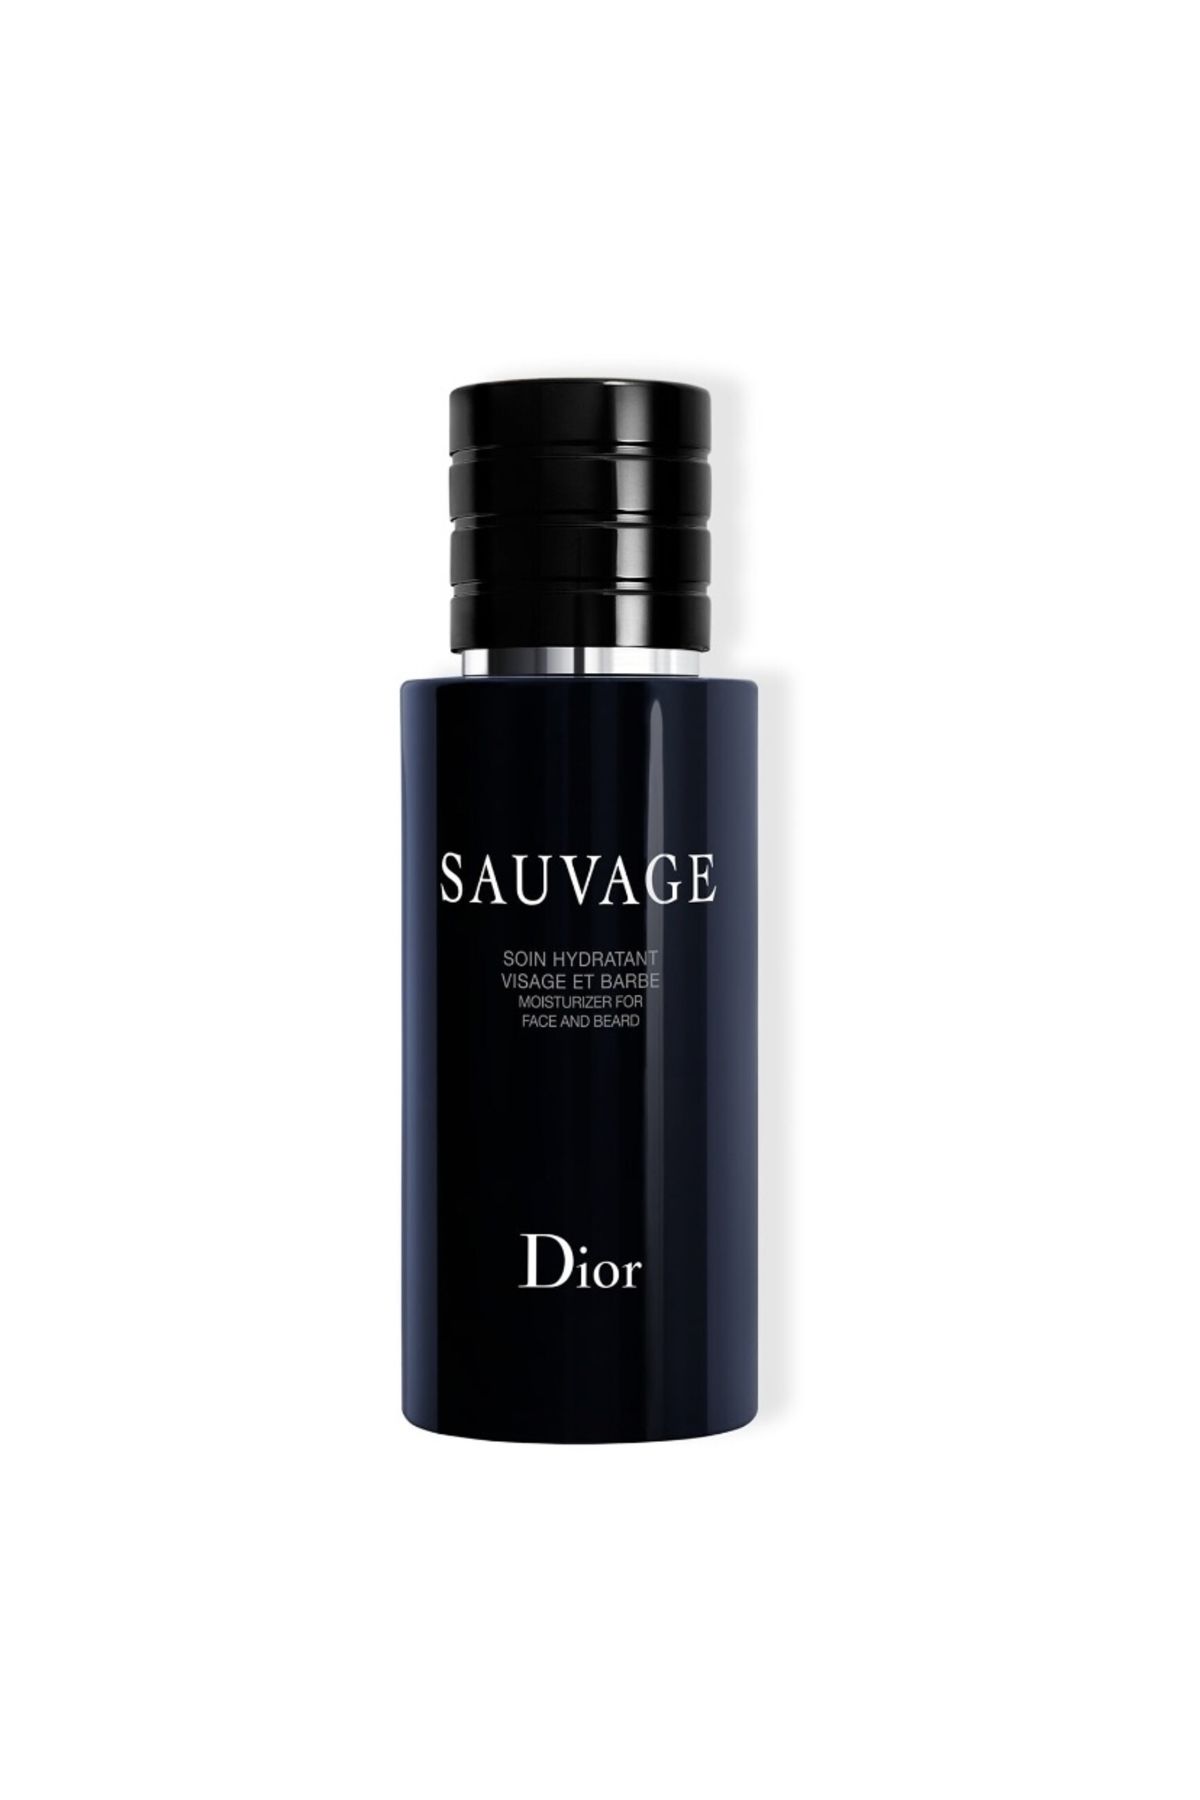 Dior Tüm Sakal, Bıyık veya Yakın Tıraş Stilleri İçin Uygun Sauvage Kokulu Nemlendiricisi 75ml